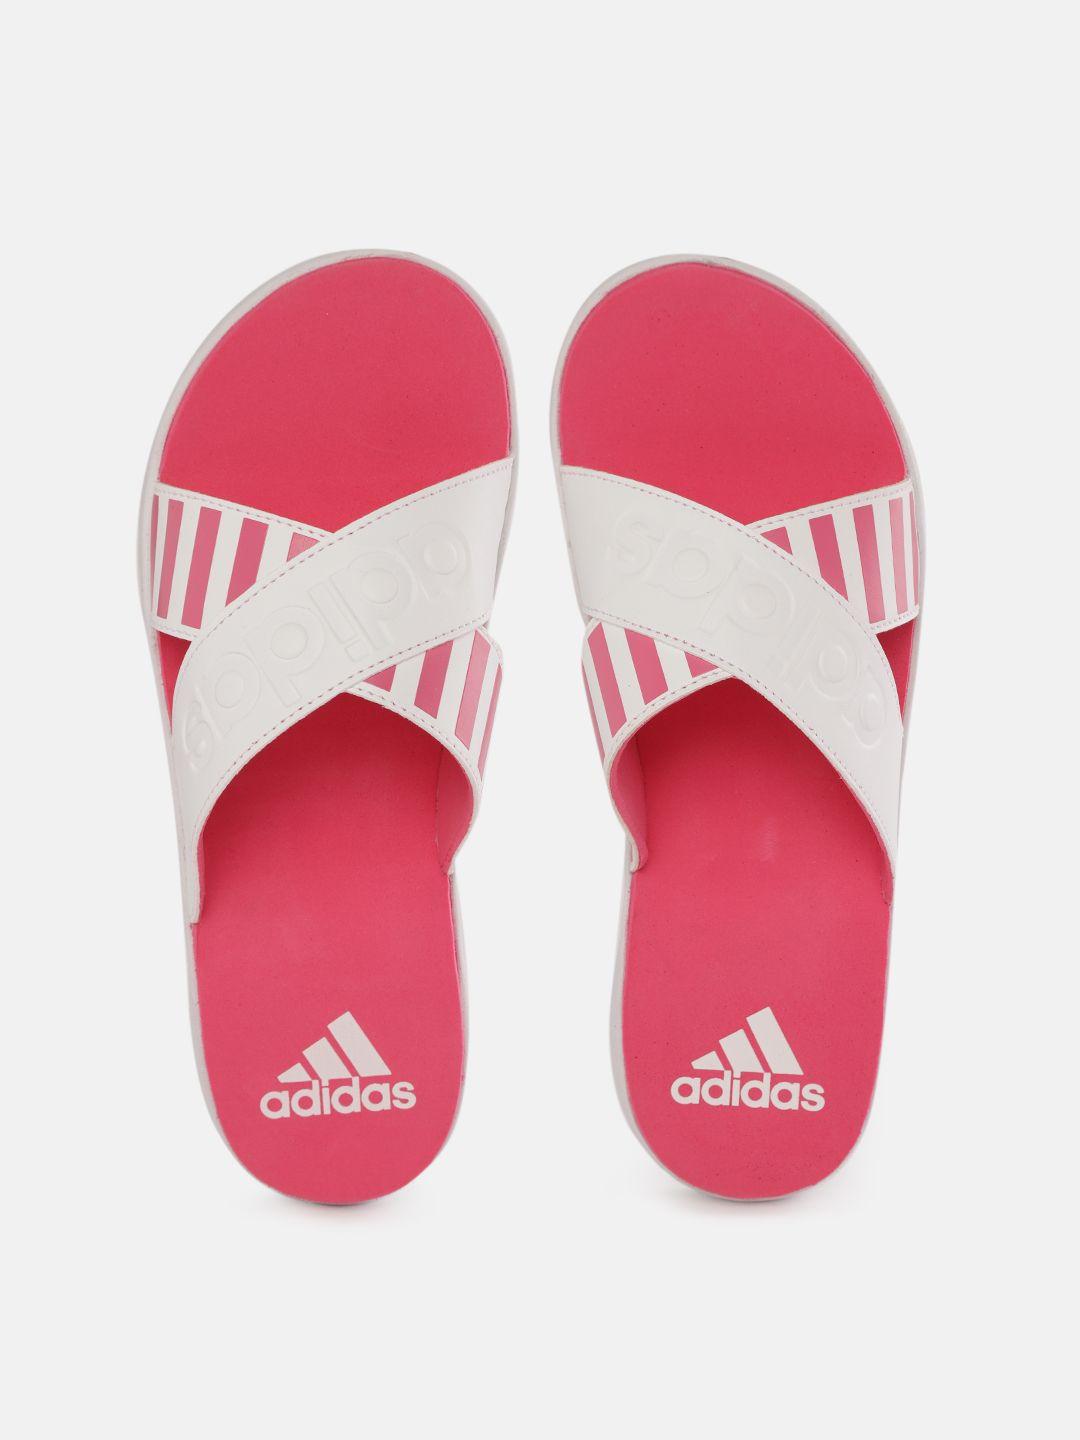 adidas women white & pink distincto striped slip-on